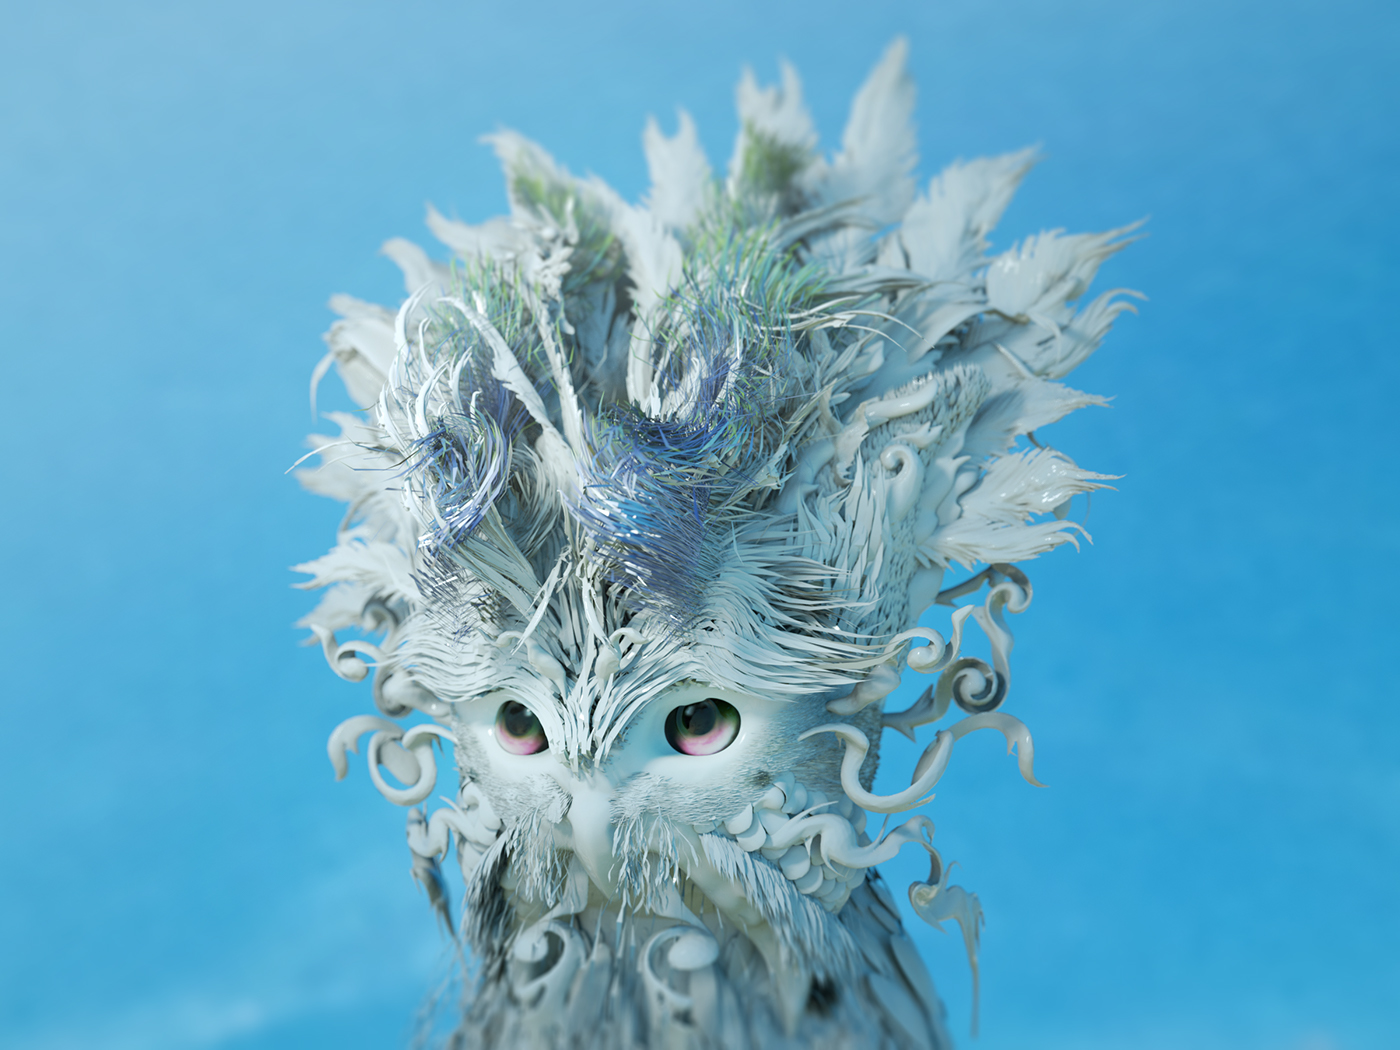 concept animal creature cinema 4d 3D artwork surreal design clara bacou clarabacou